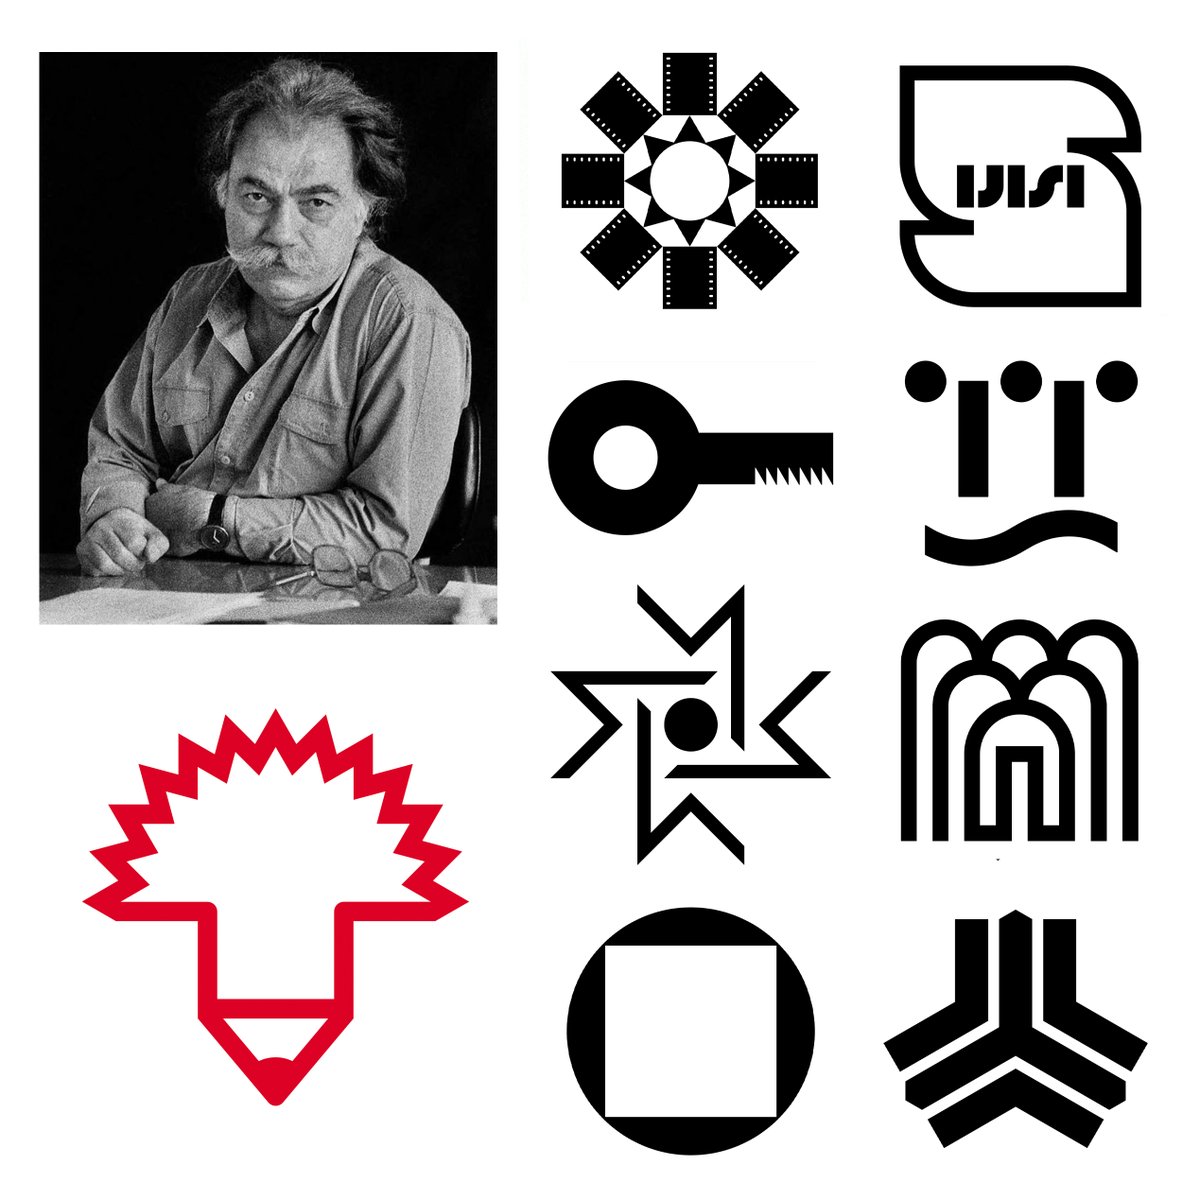 Morteza Momayez, Iran Discover more logos at logo-archive.org #logos #branding #logodesign #designhistory #graphicdesign #logodesign